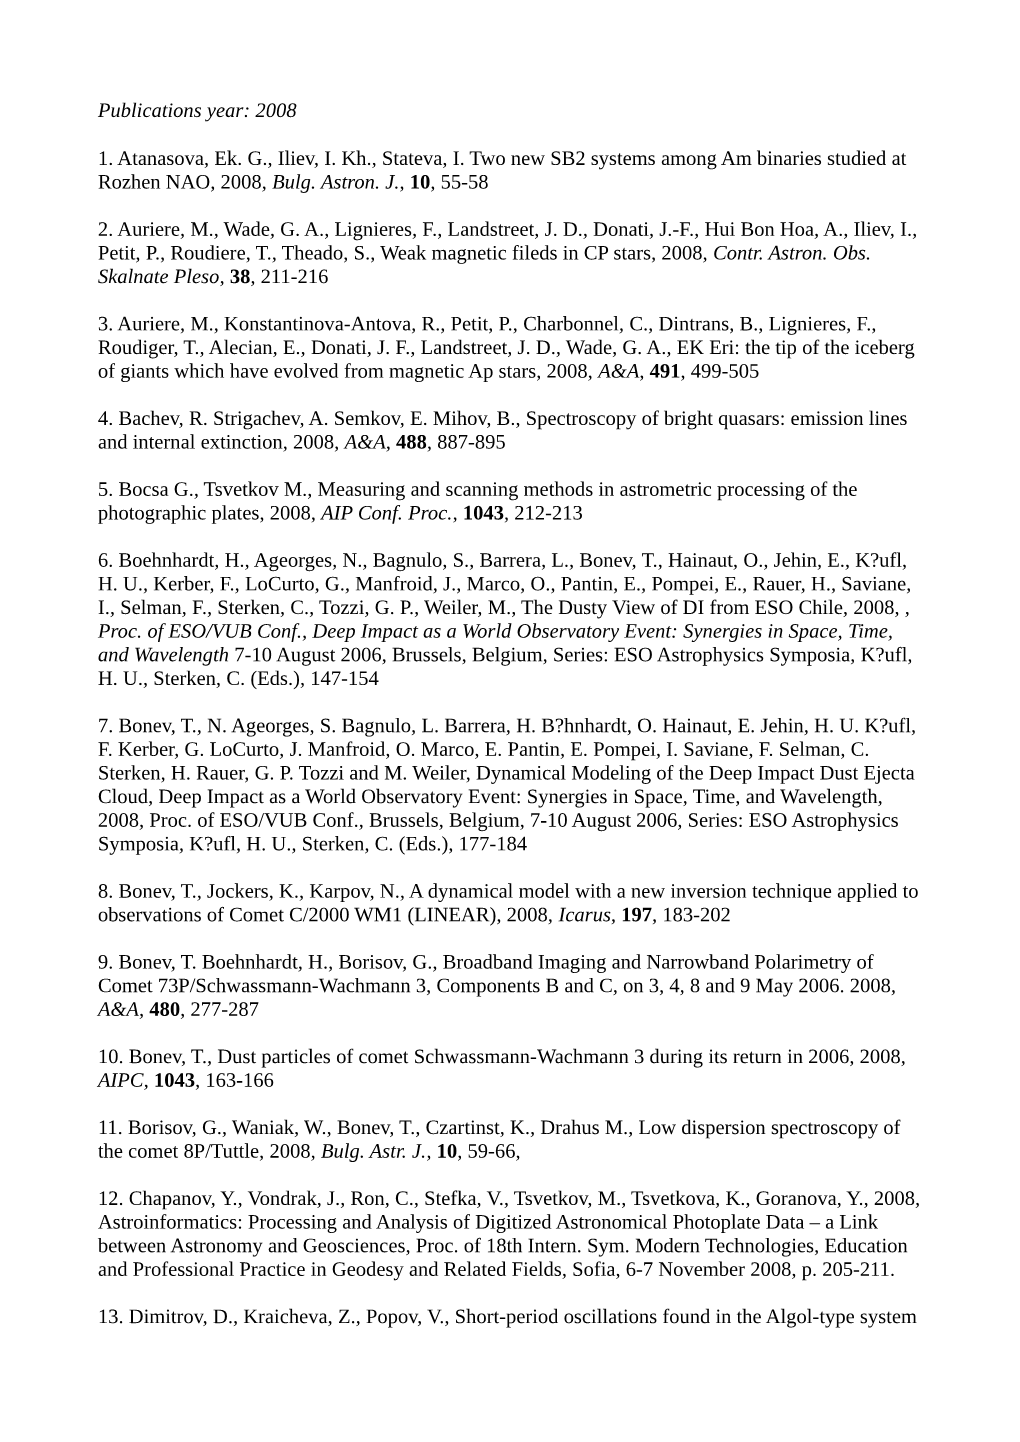 Publications Year: 2008 1. Atanasova, Ek. G., Iliev, I. Kh., Stateva, I. Two